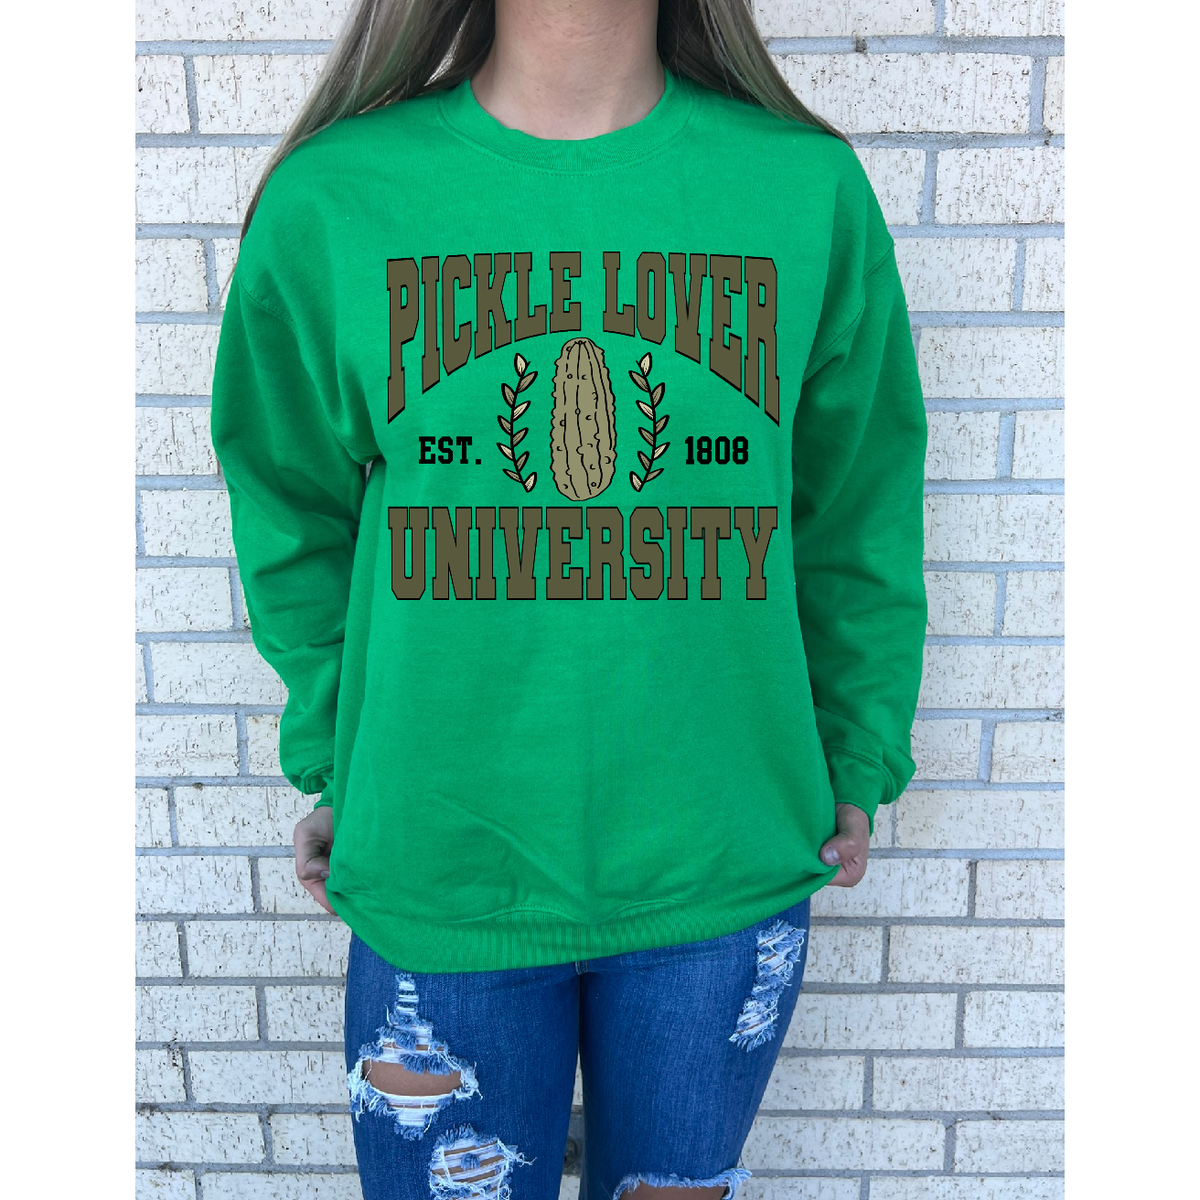 Pickle Lover University Tee or Sweatshirt